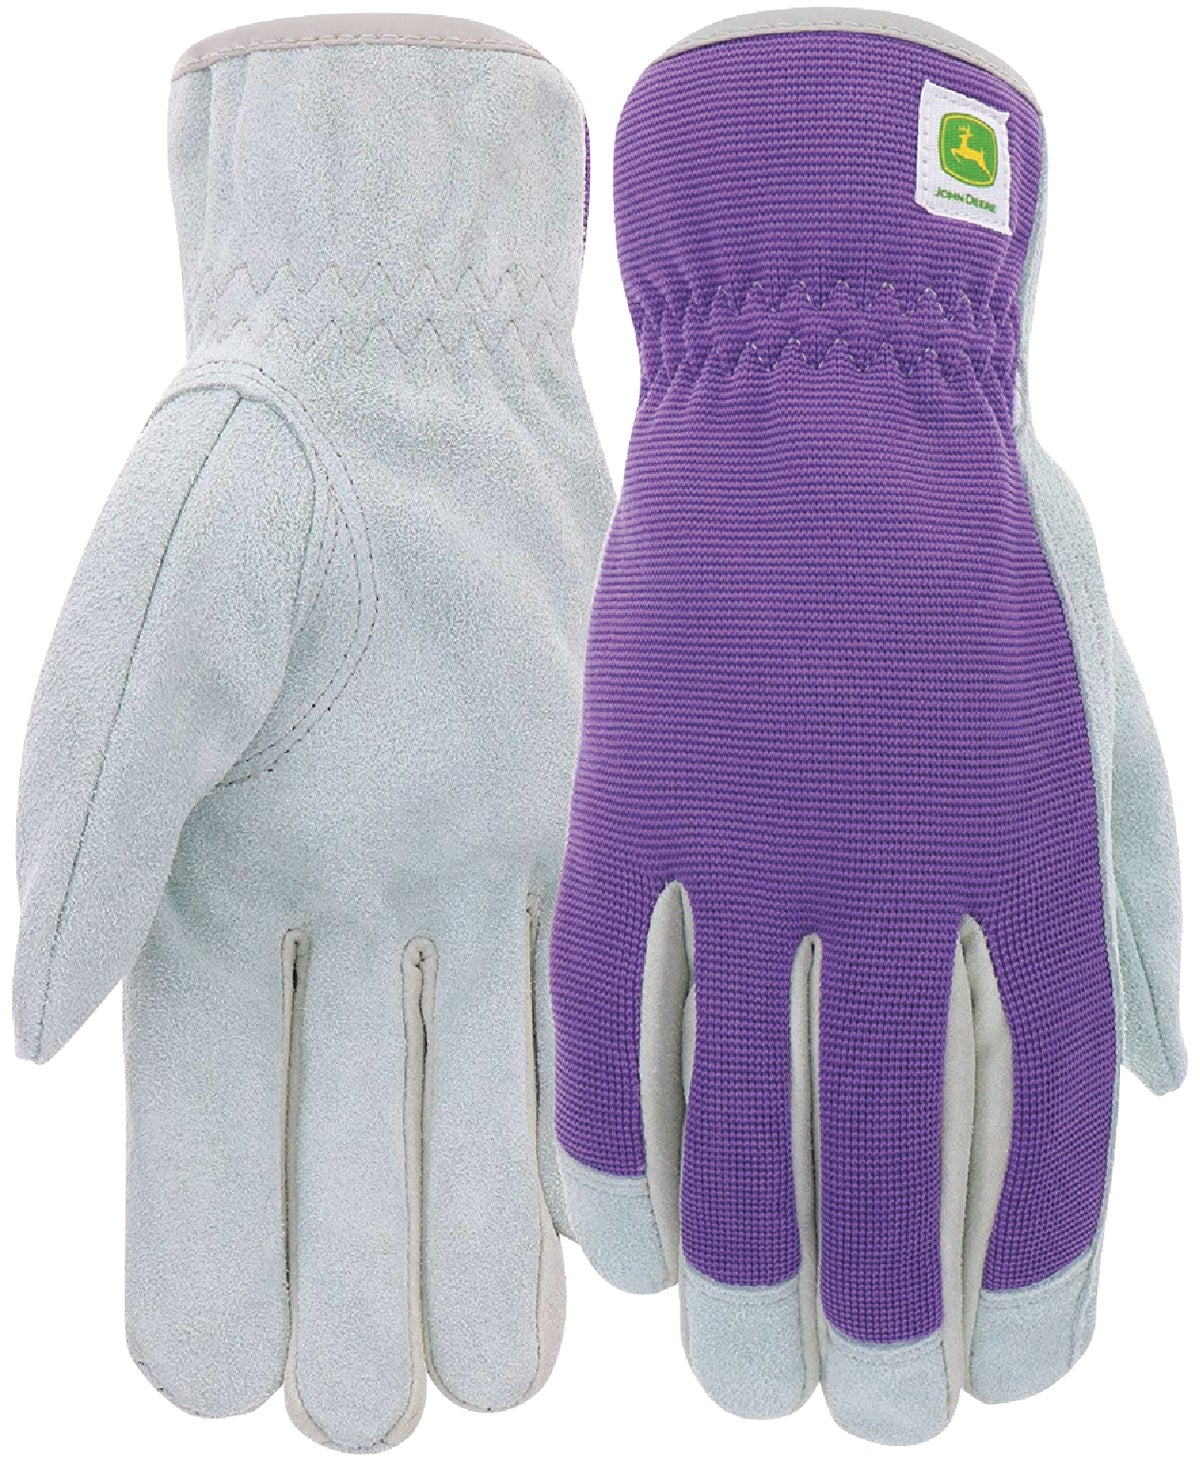 Buy John Deere Leather Work Gloves L, Green & Gray